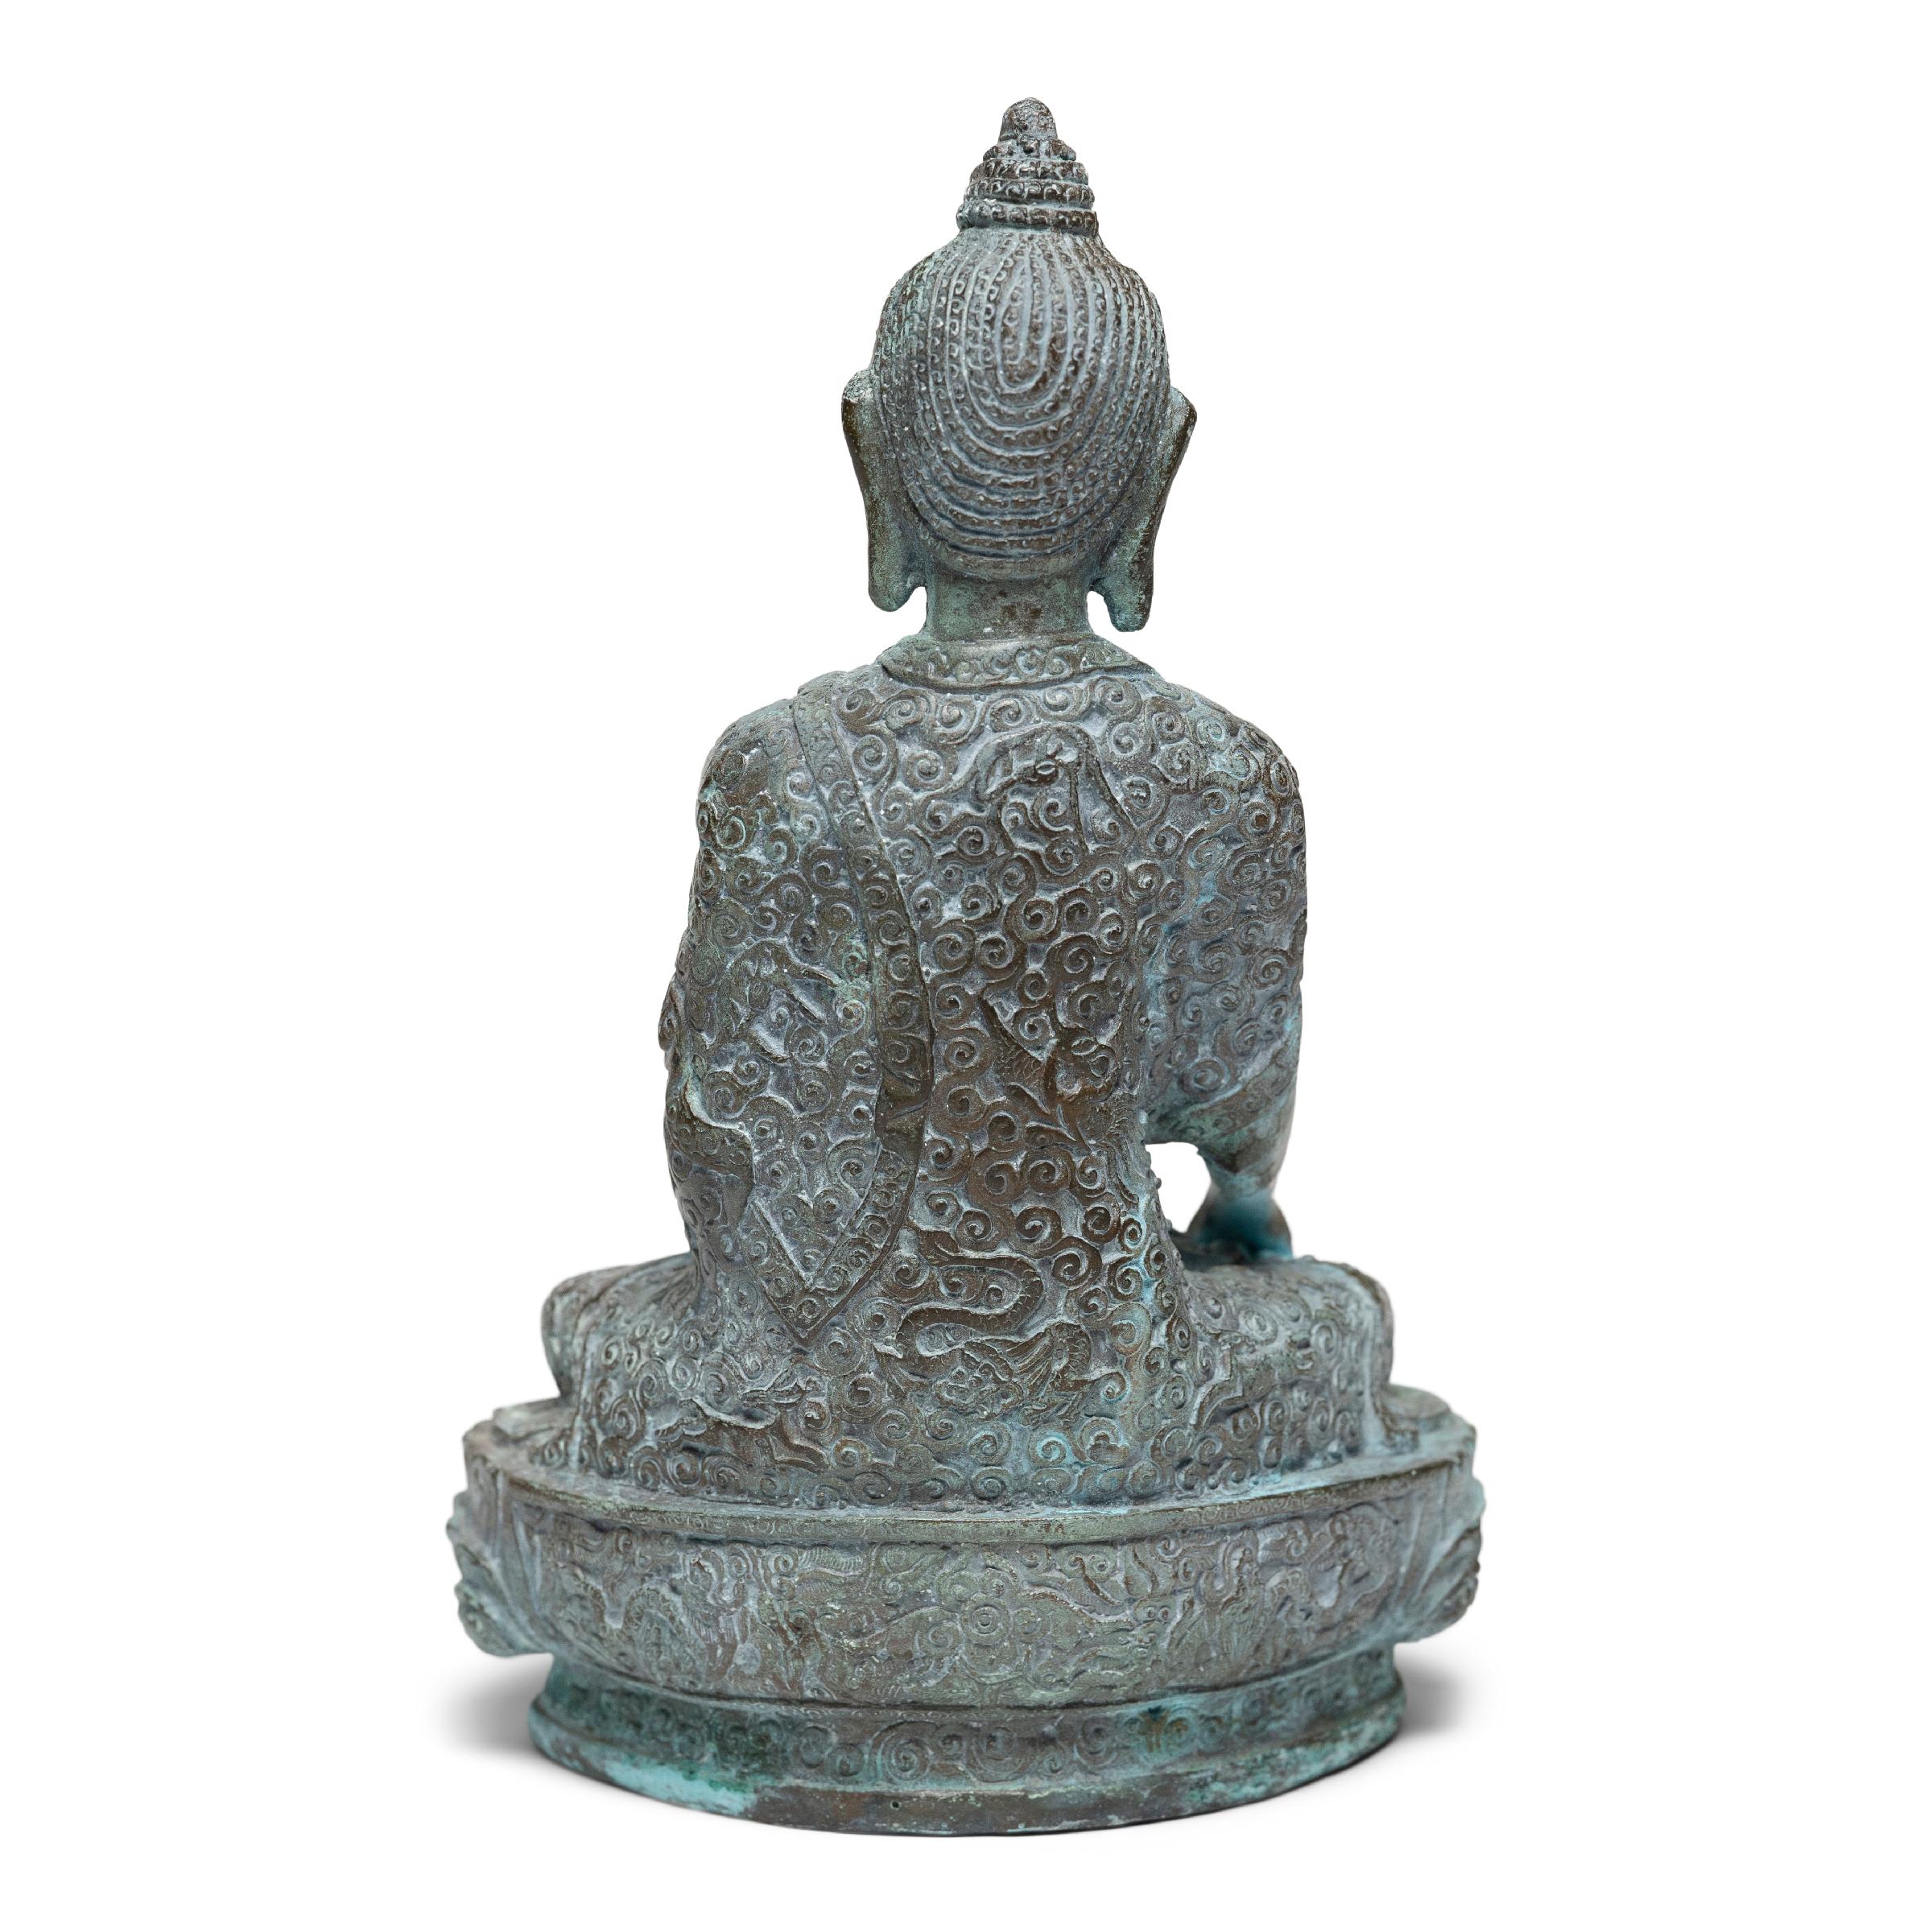 Qing Chinese Bronze Seated Buddha Figure, c. 1850 